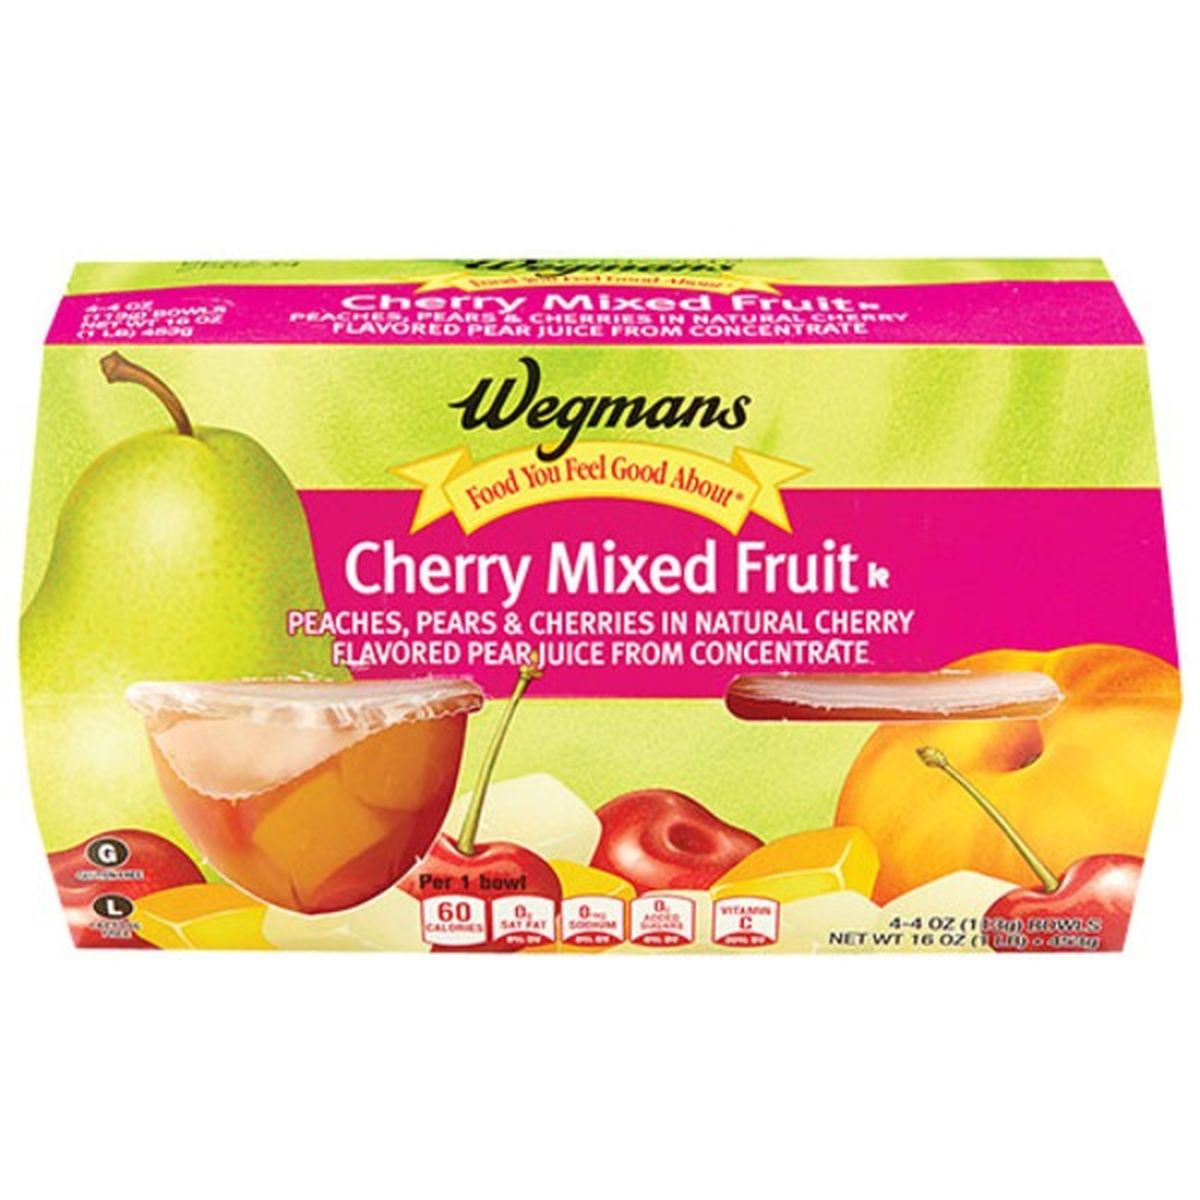 Calories in Wegmans Cherry Mixed Fruit